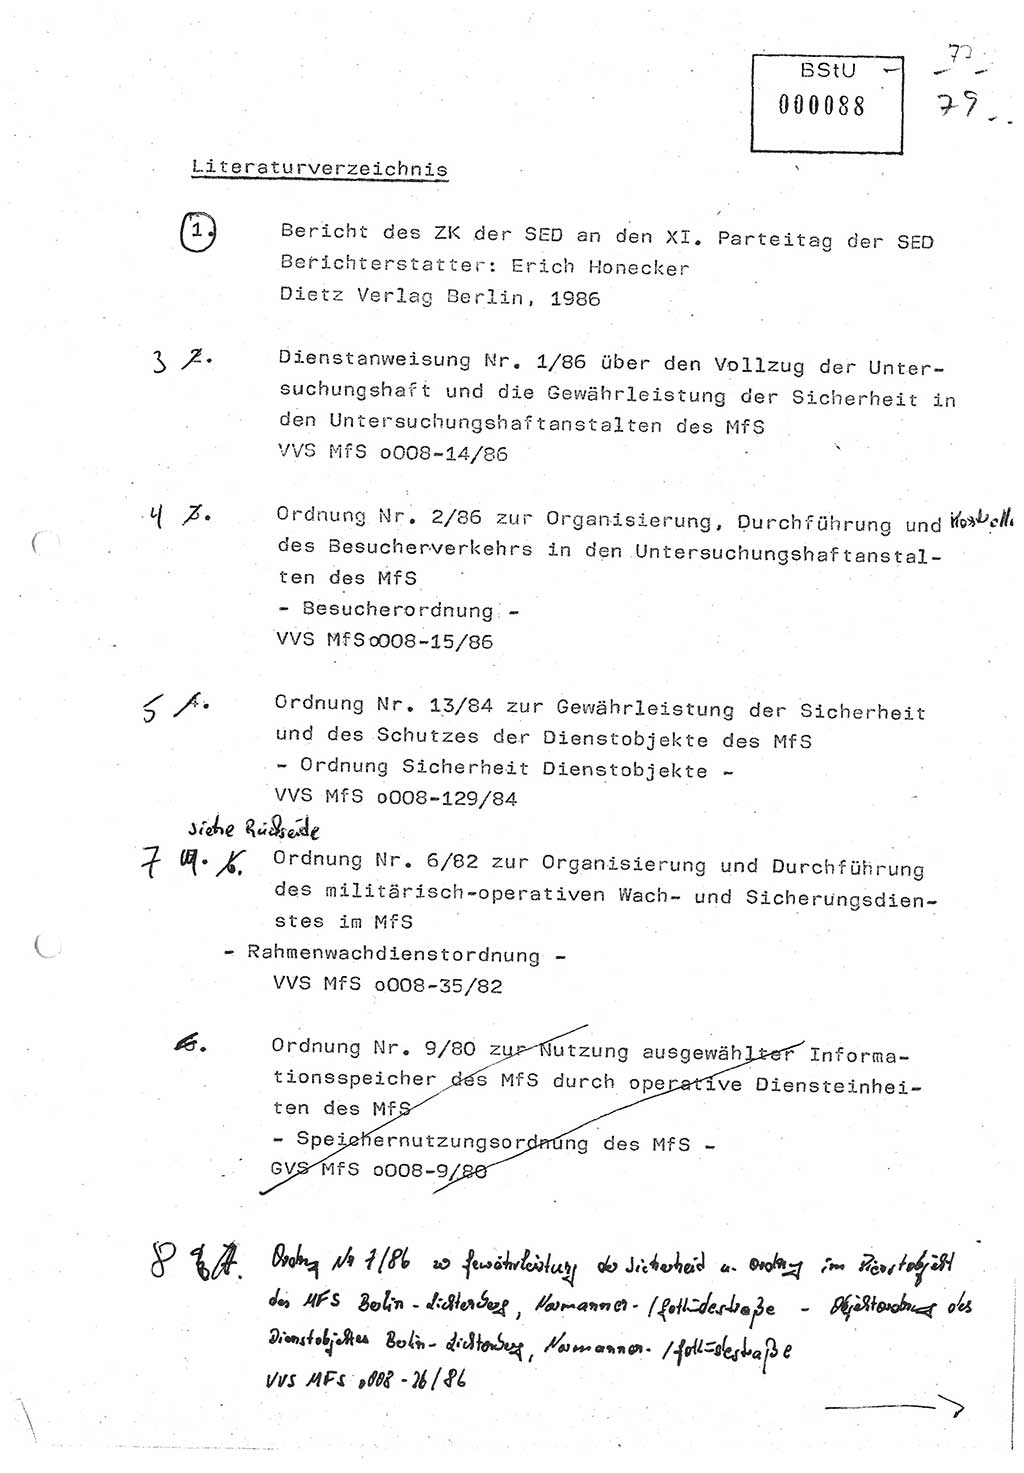 Diplomarbeit (Entwurf) Oberleutnant Peter Parke (Abt. ⅩⅣ), Ministerium für Staatssicherheit (MfS) [Deutsche Demokratische Republik (DDR)], Juristische Hochschule (JHS), Geheime Verschlußsache (GVS) o001-98/86, Potsdam 1986, Seite 89 (Dipl.-Arb. MfS DDR JHS GVS o001-98/86 1986, S. 89)